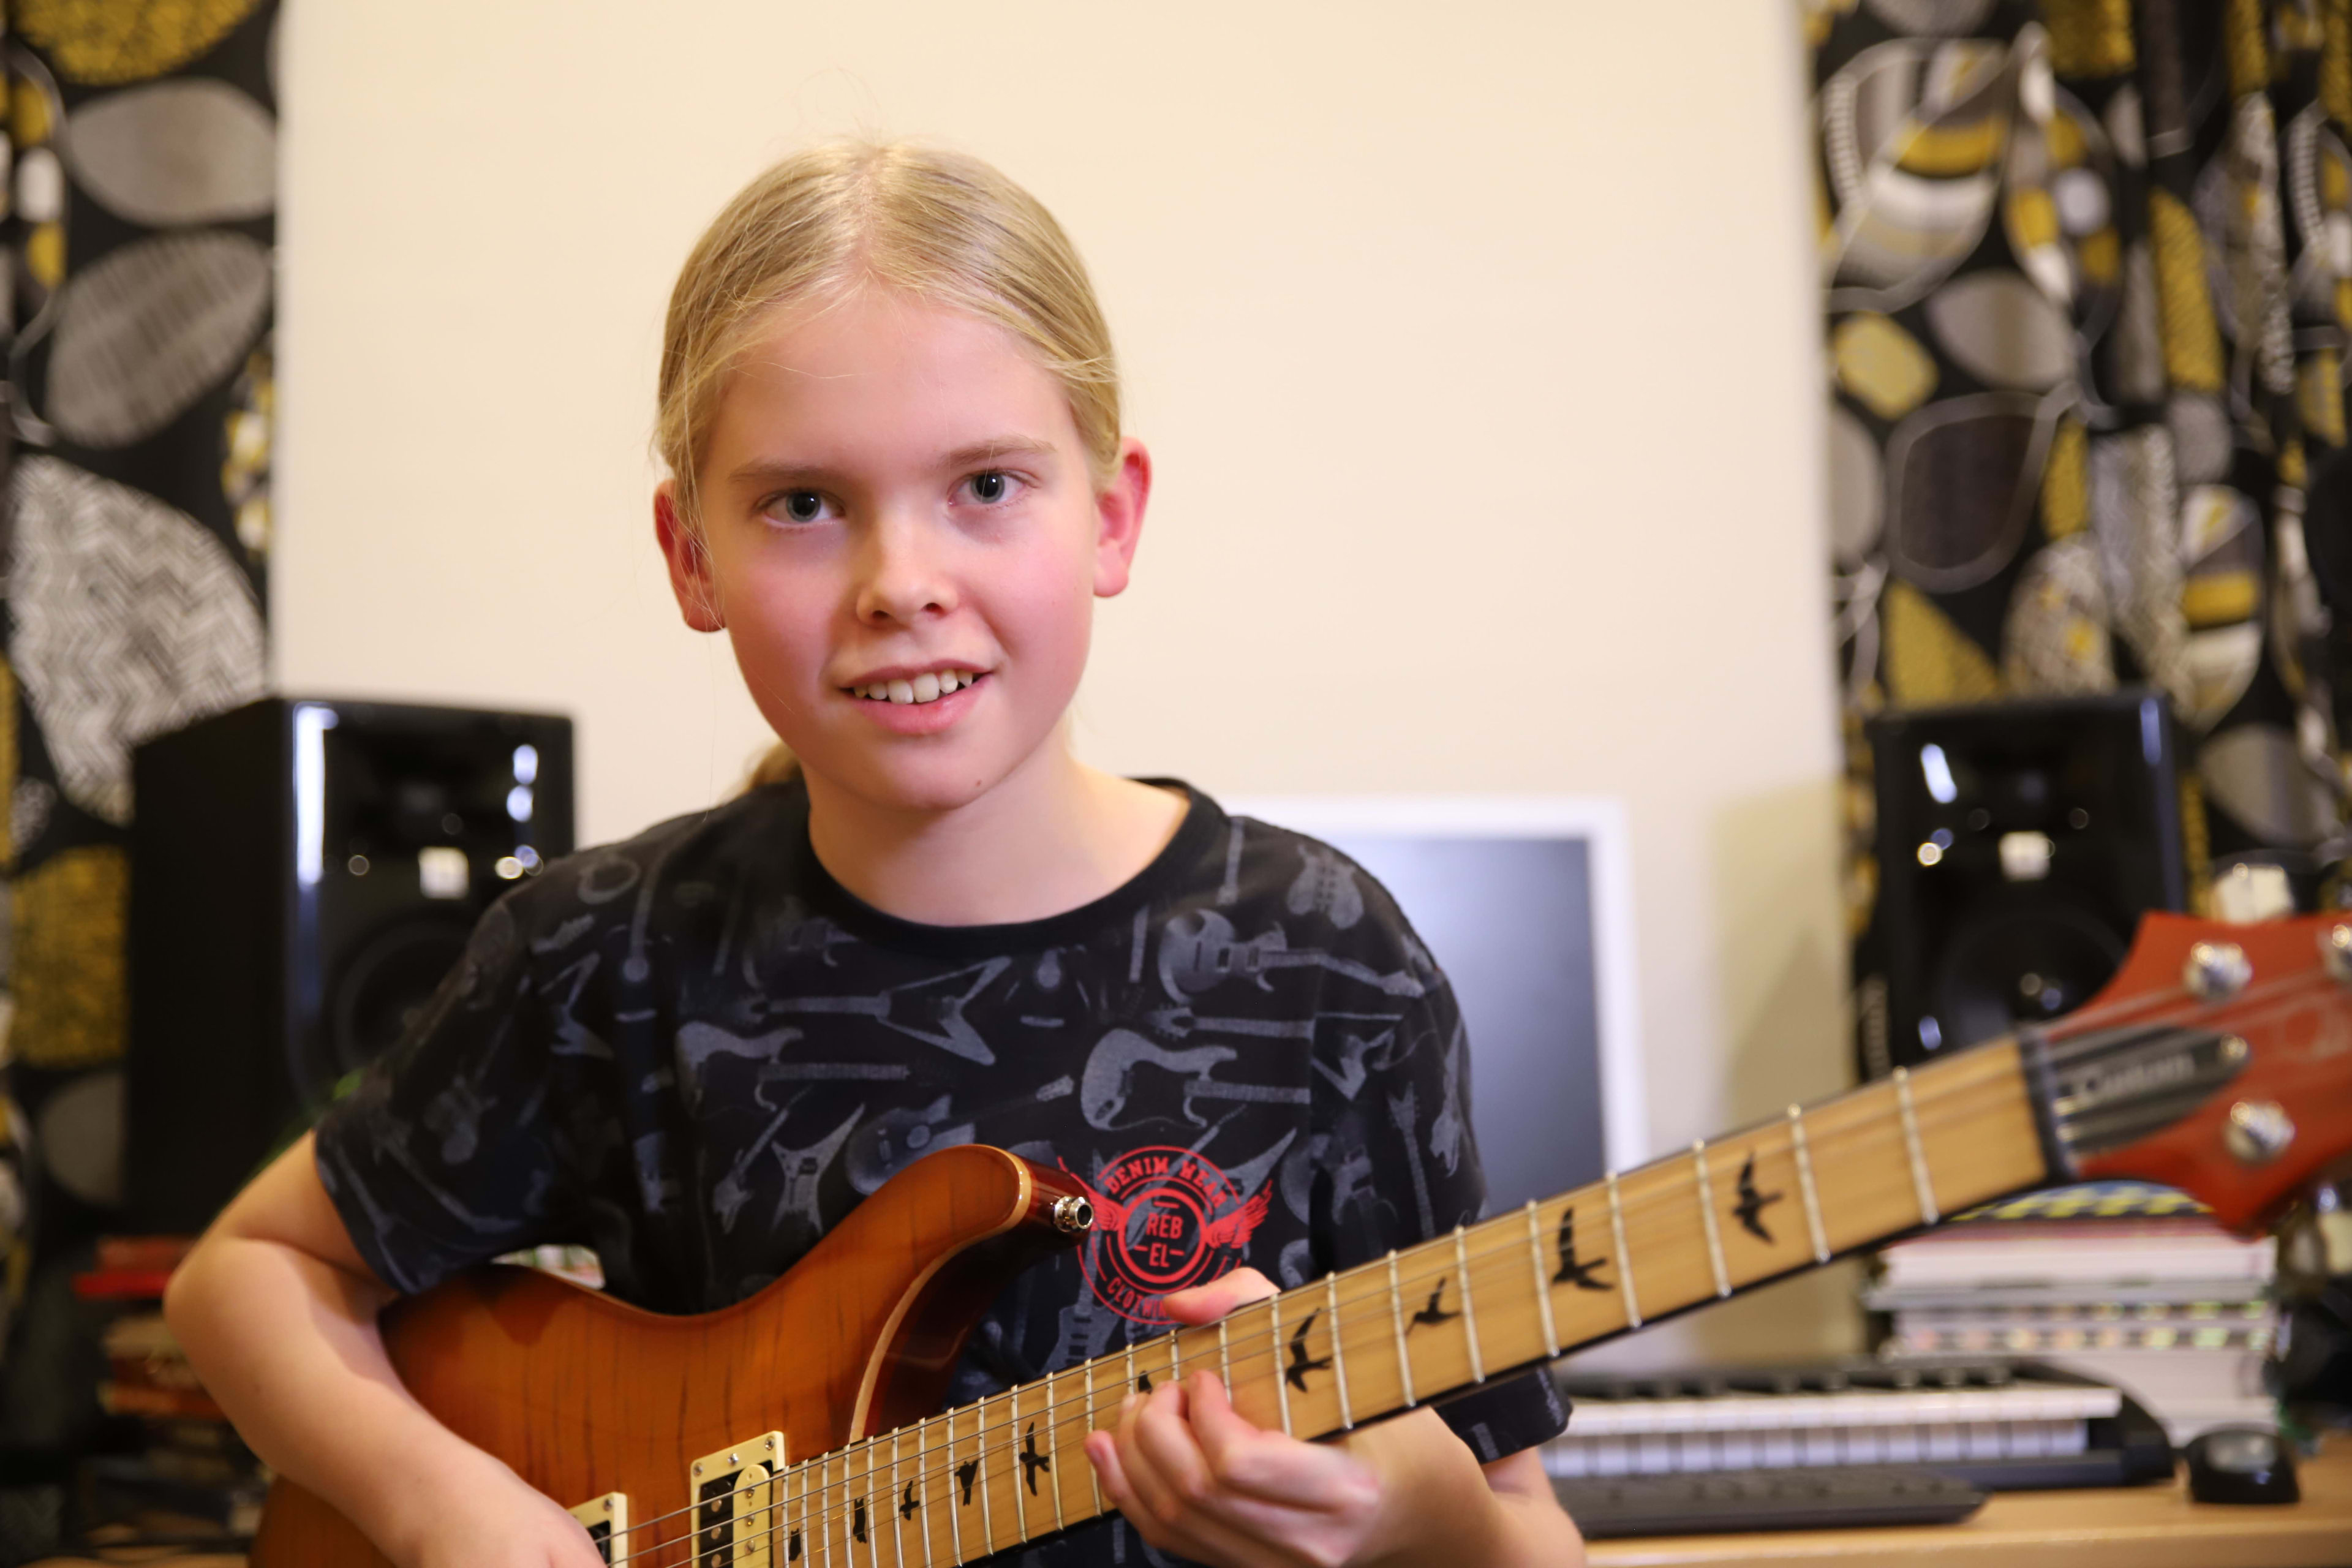 Onko vuoden paras nuori kitaristi suomalainen? | Alueelliset uutisvideot |  Yle Arenan